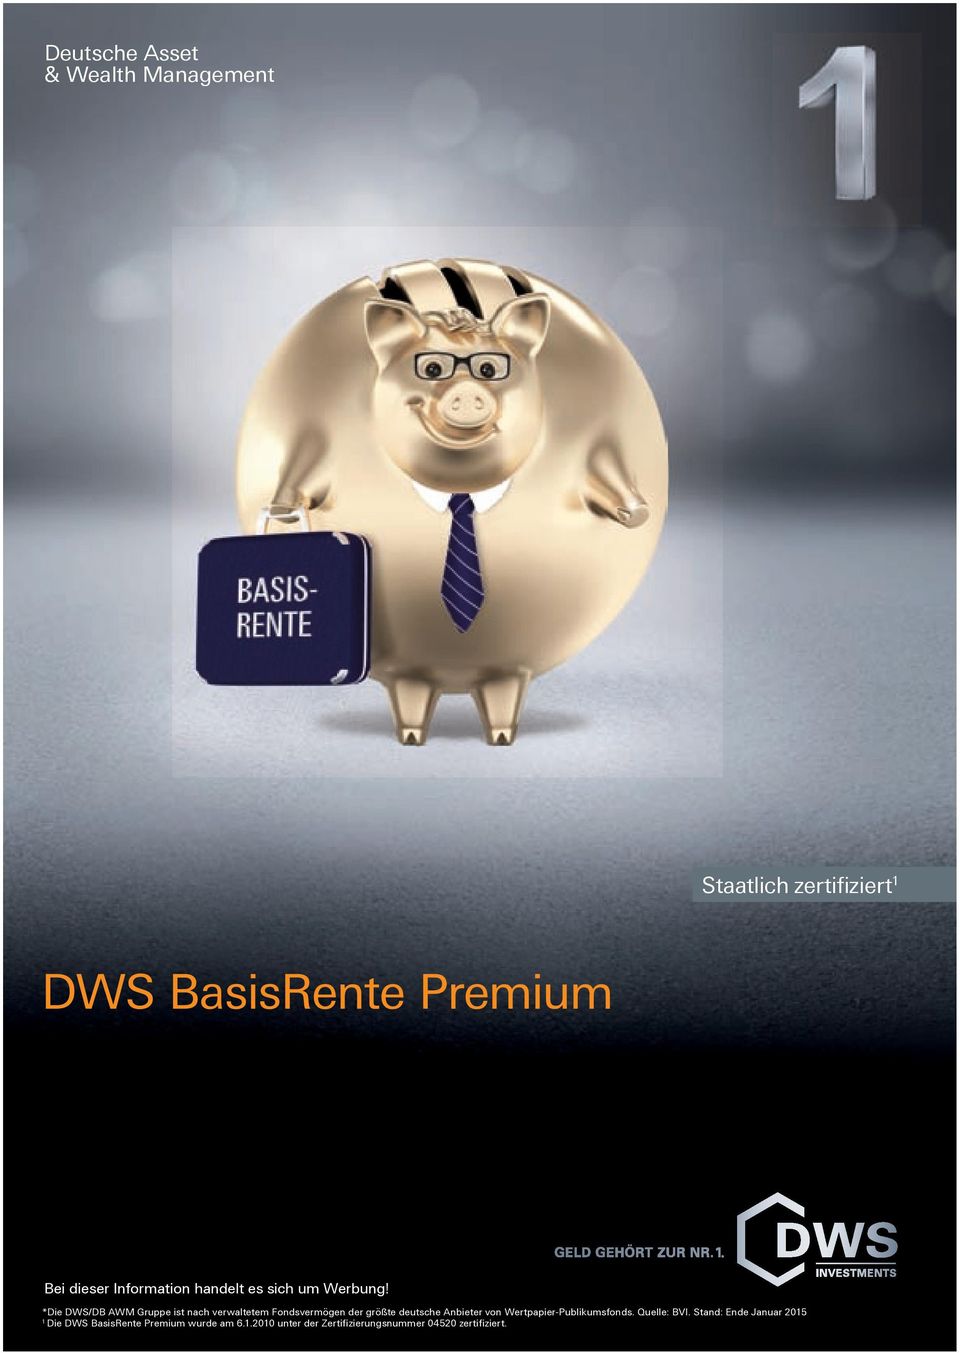 *Die DWS/DB AWM Gruppe ist nach verwaltetem Fondsvermögen der größte deutsche Anbieter von